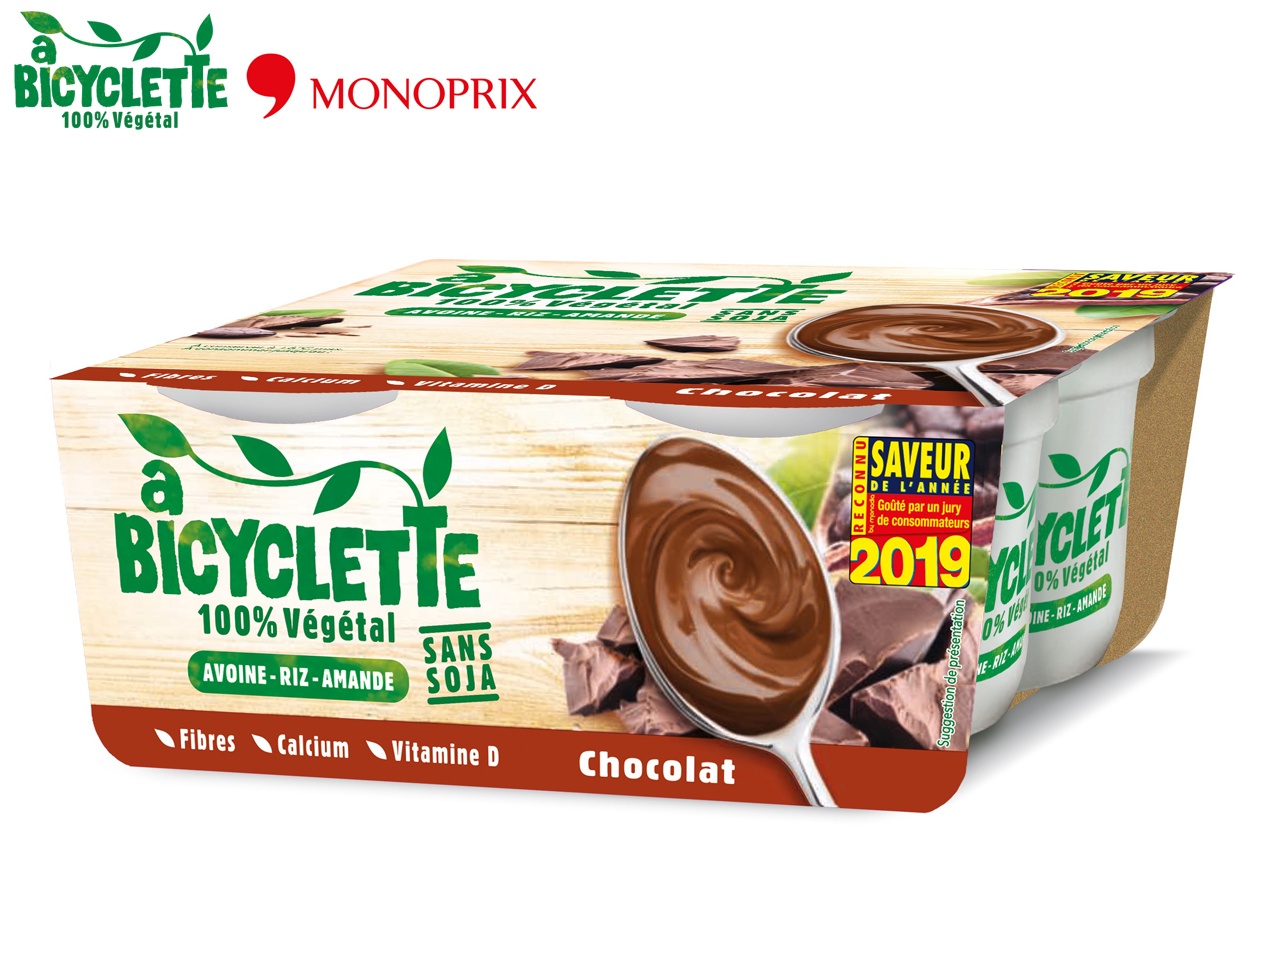 A Bicyclette, marque de desserts végétaux disponible chez Monoprix